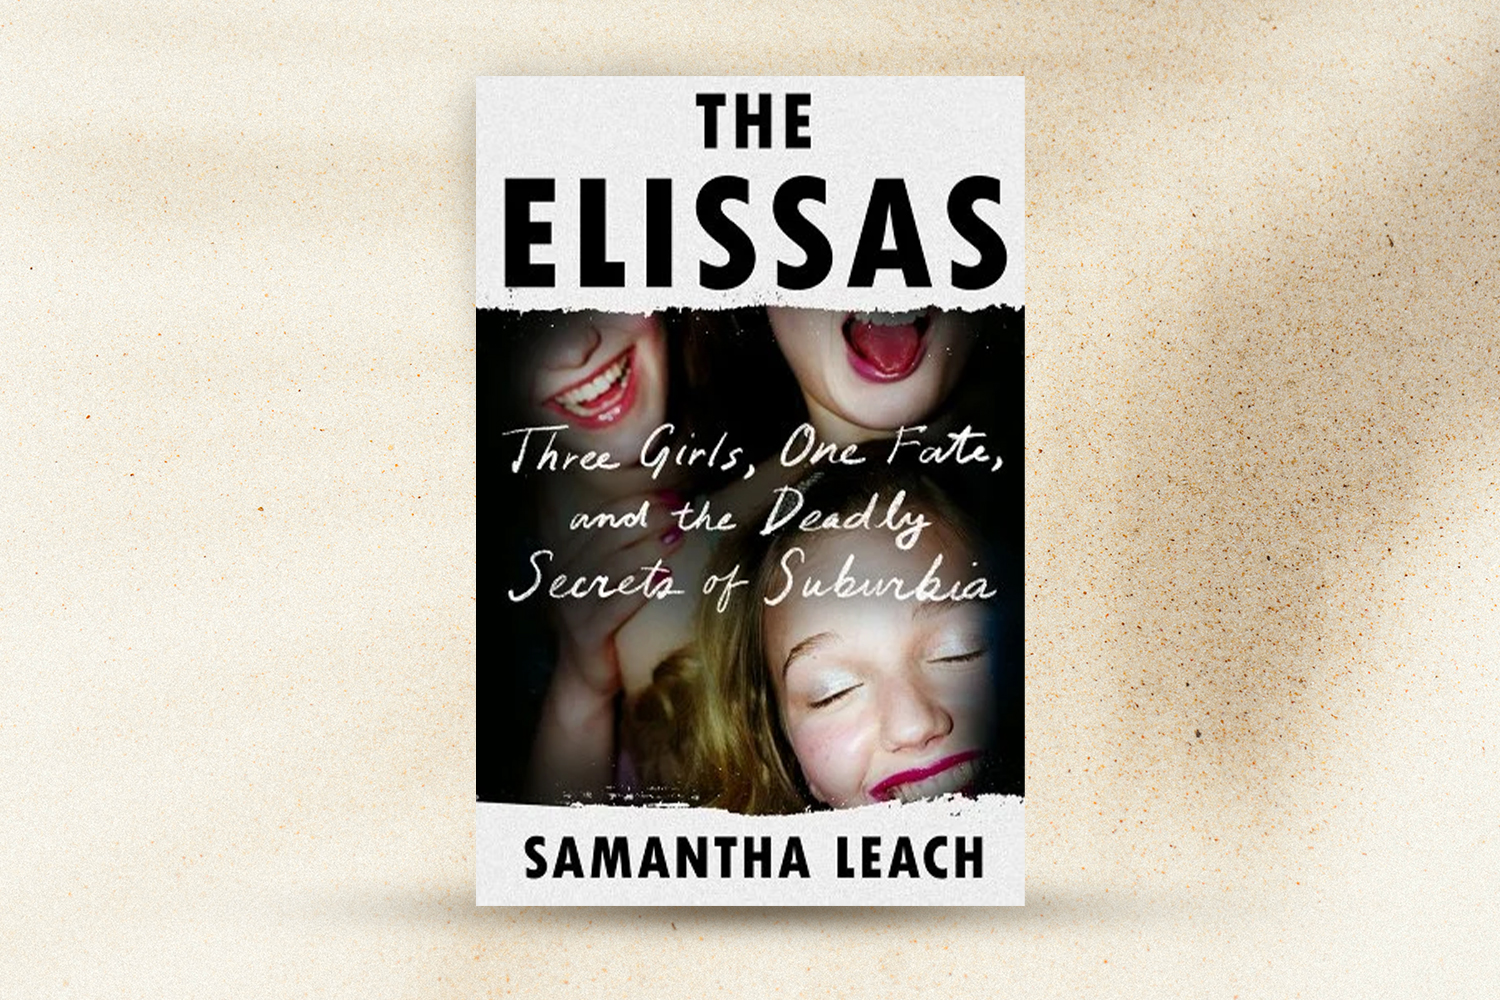 "The Elissas"